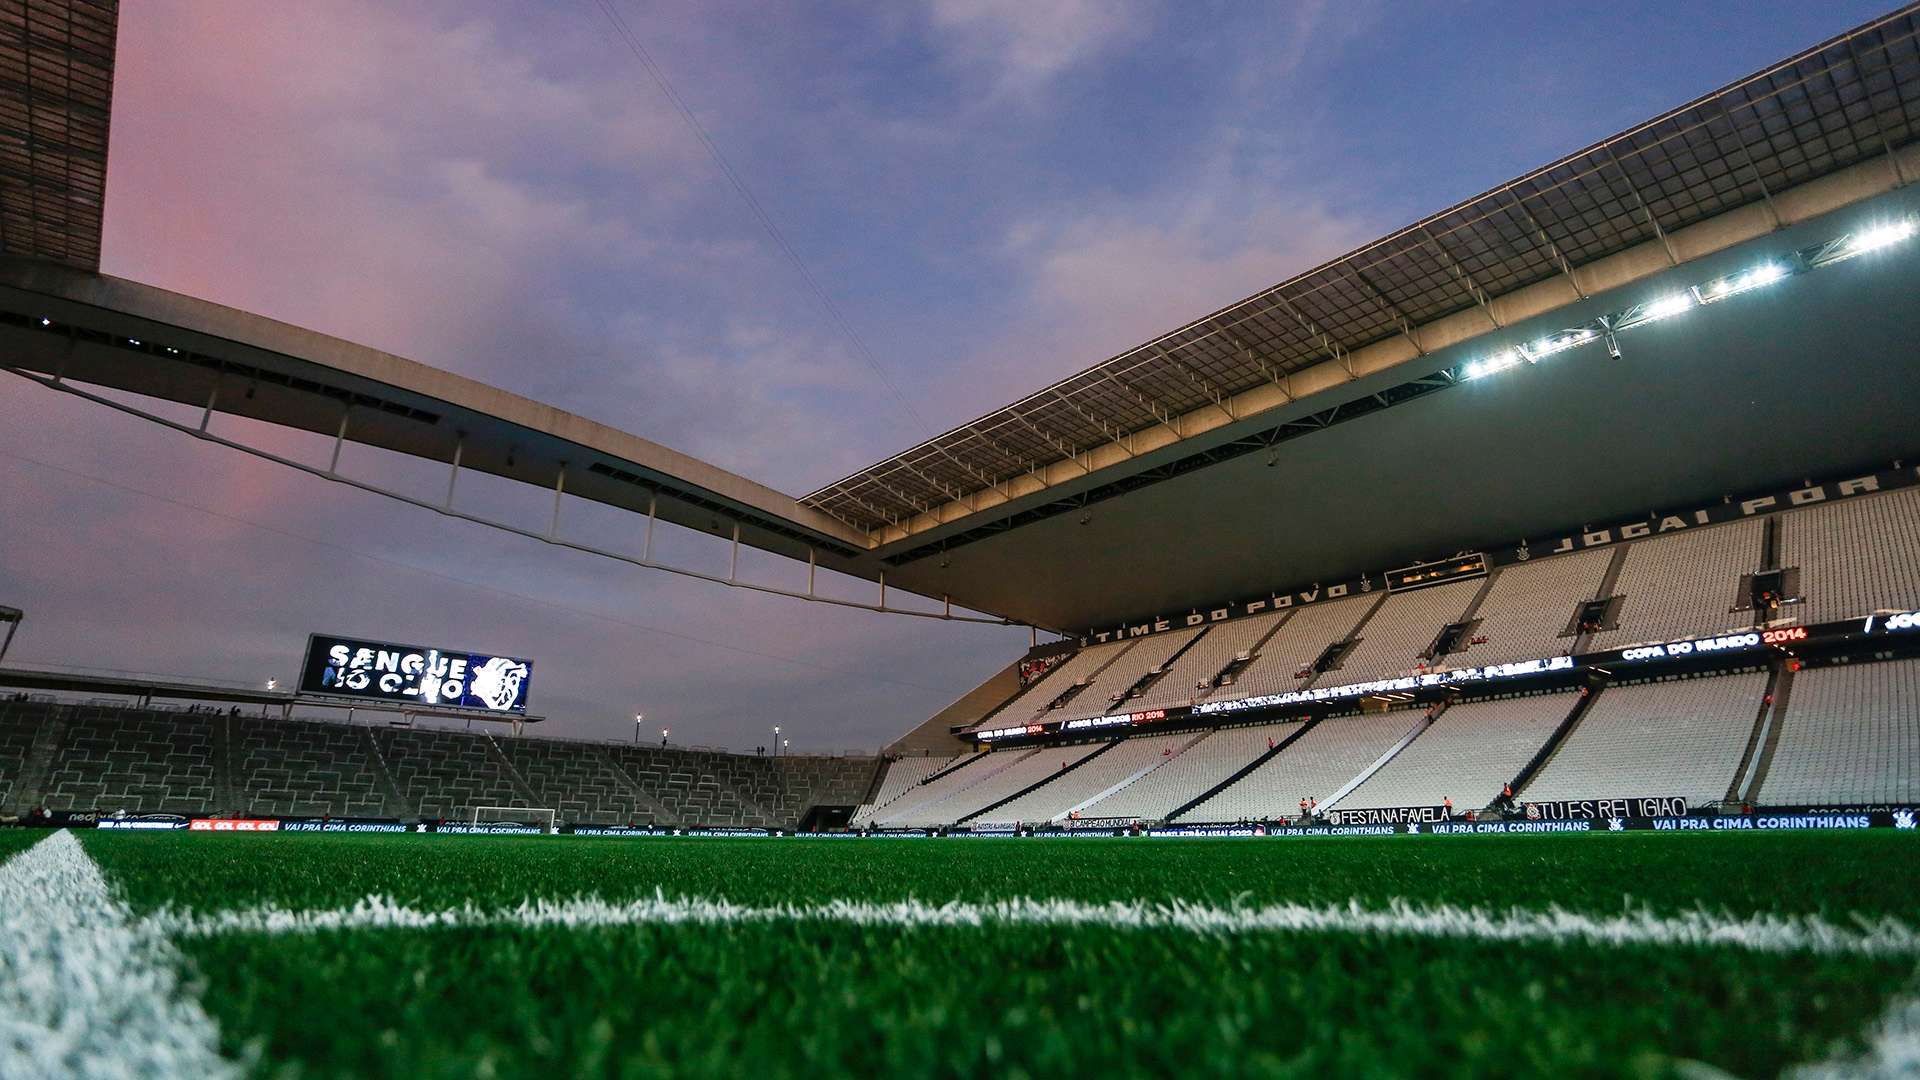 NeoQuímia Arena Corinthians, Brasileirão 2022